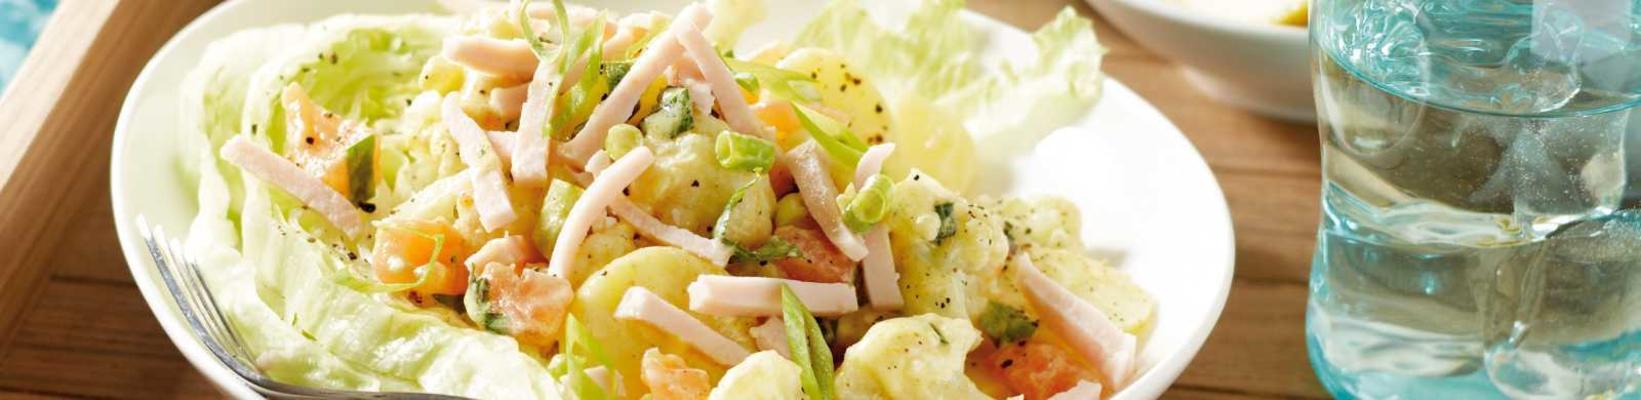 potato-cauliflower salad with chicken